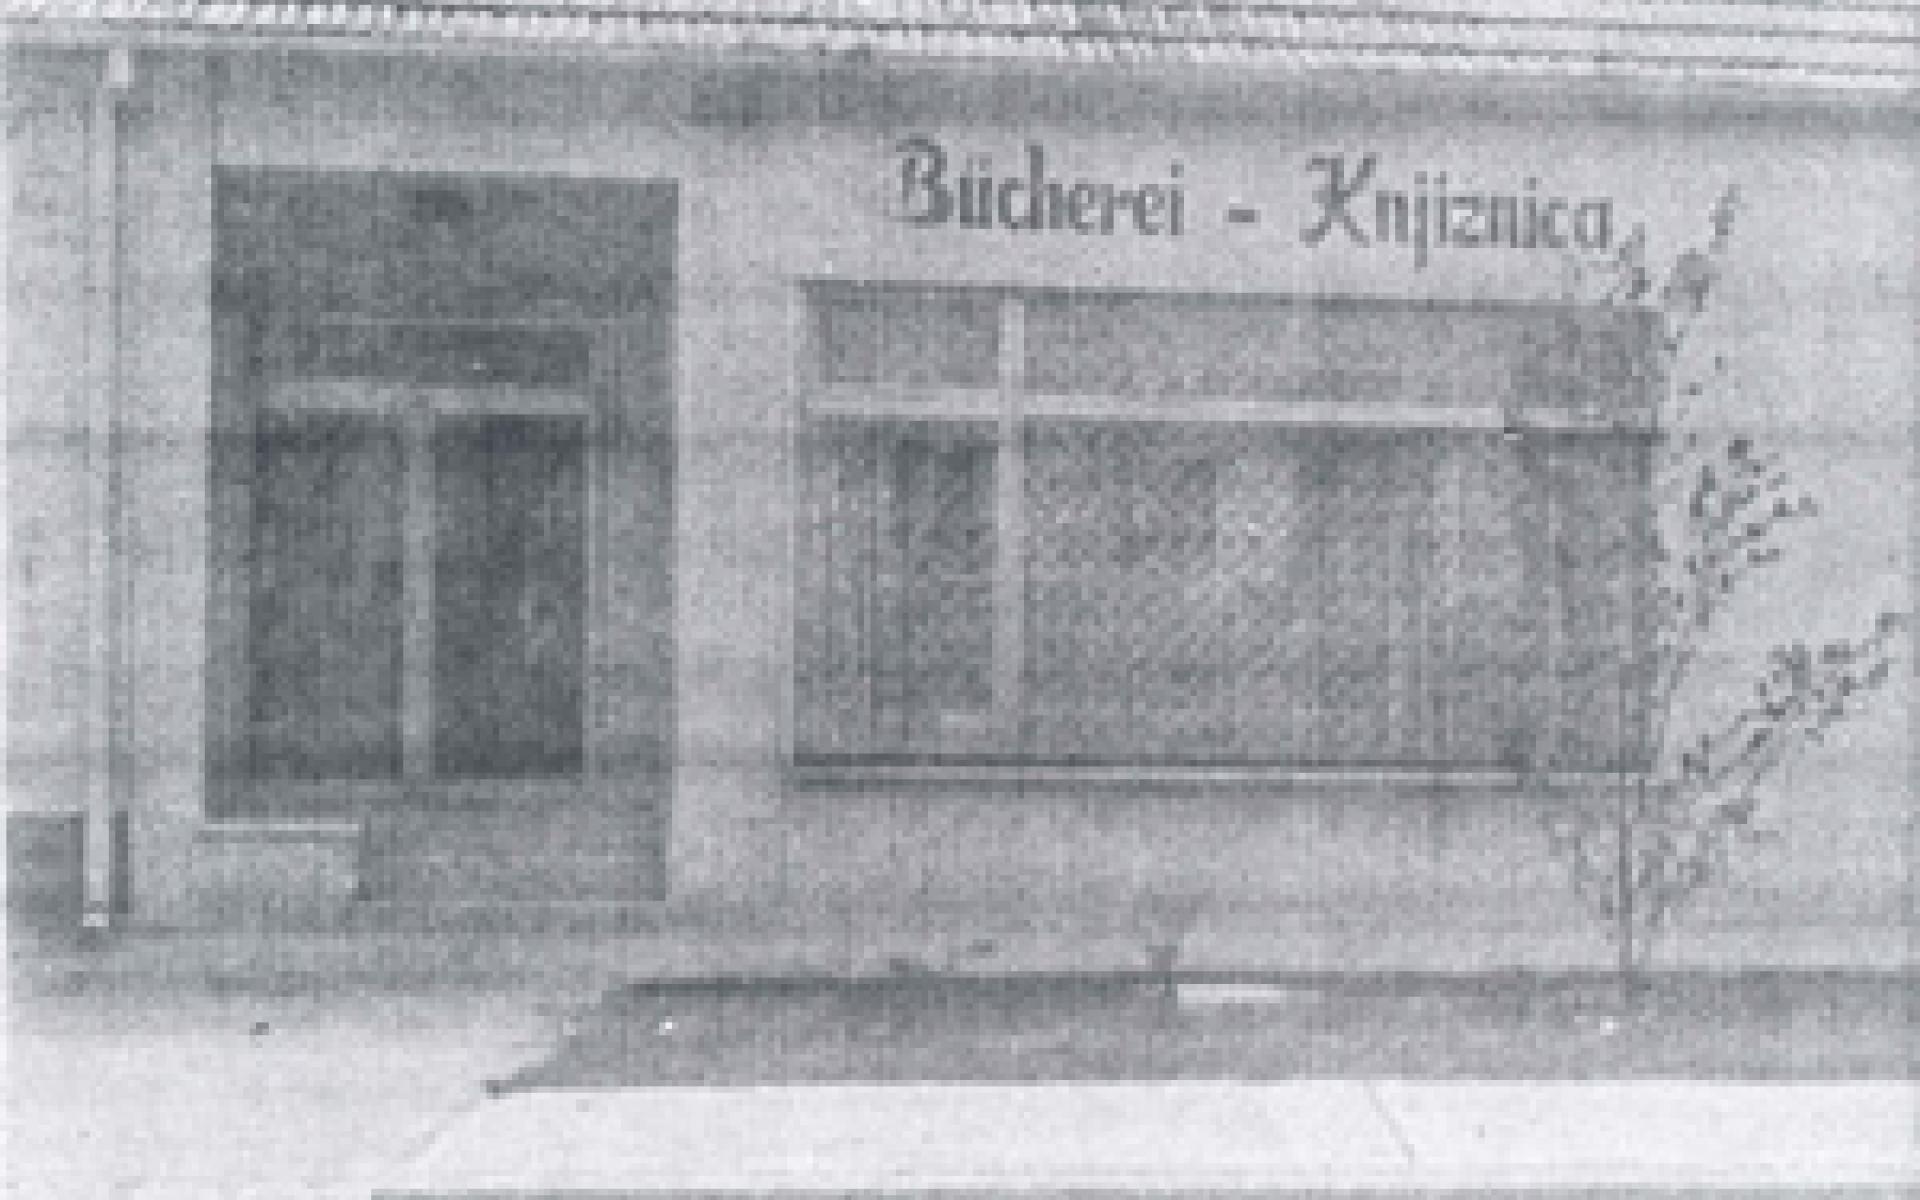 Alte Bücherei Nikitsch